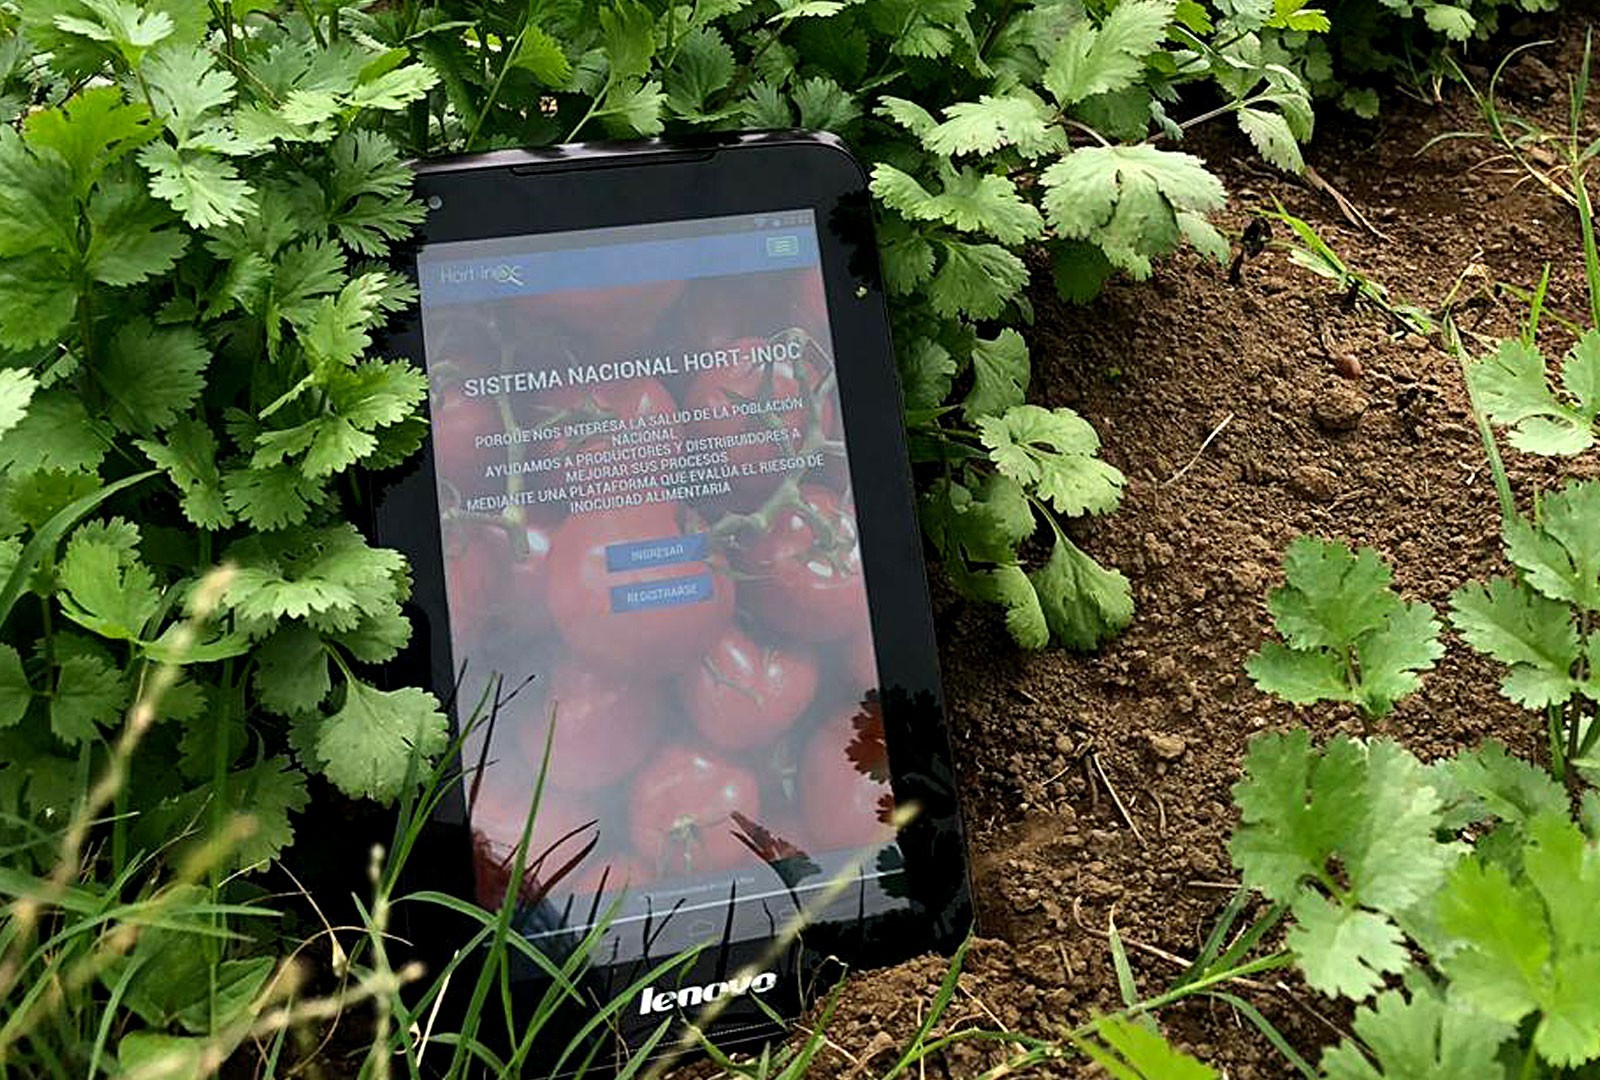 Hort-inoc, primera herramienta digital para evitar contaminación de hortalizas